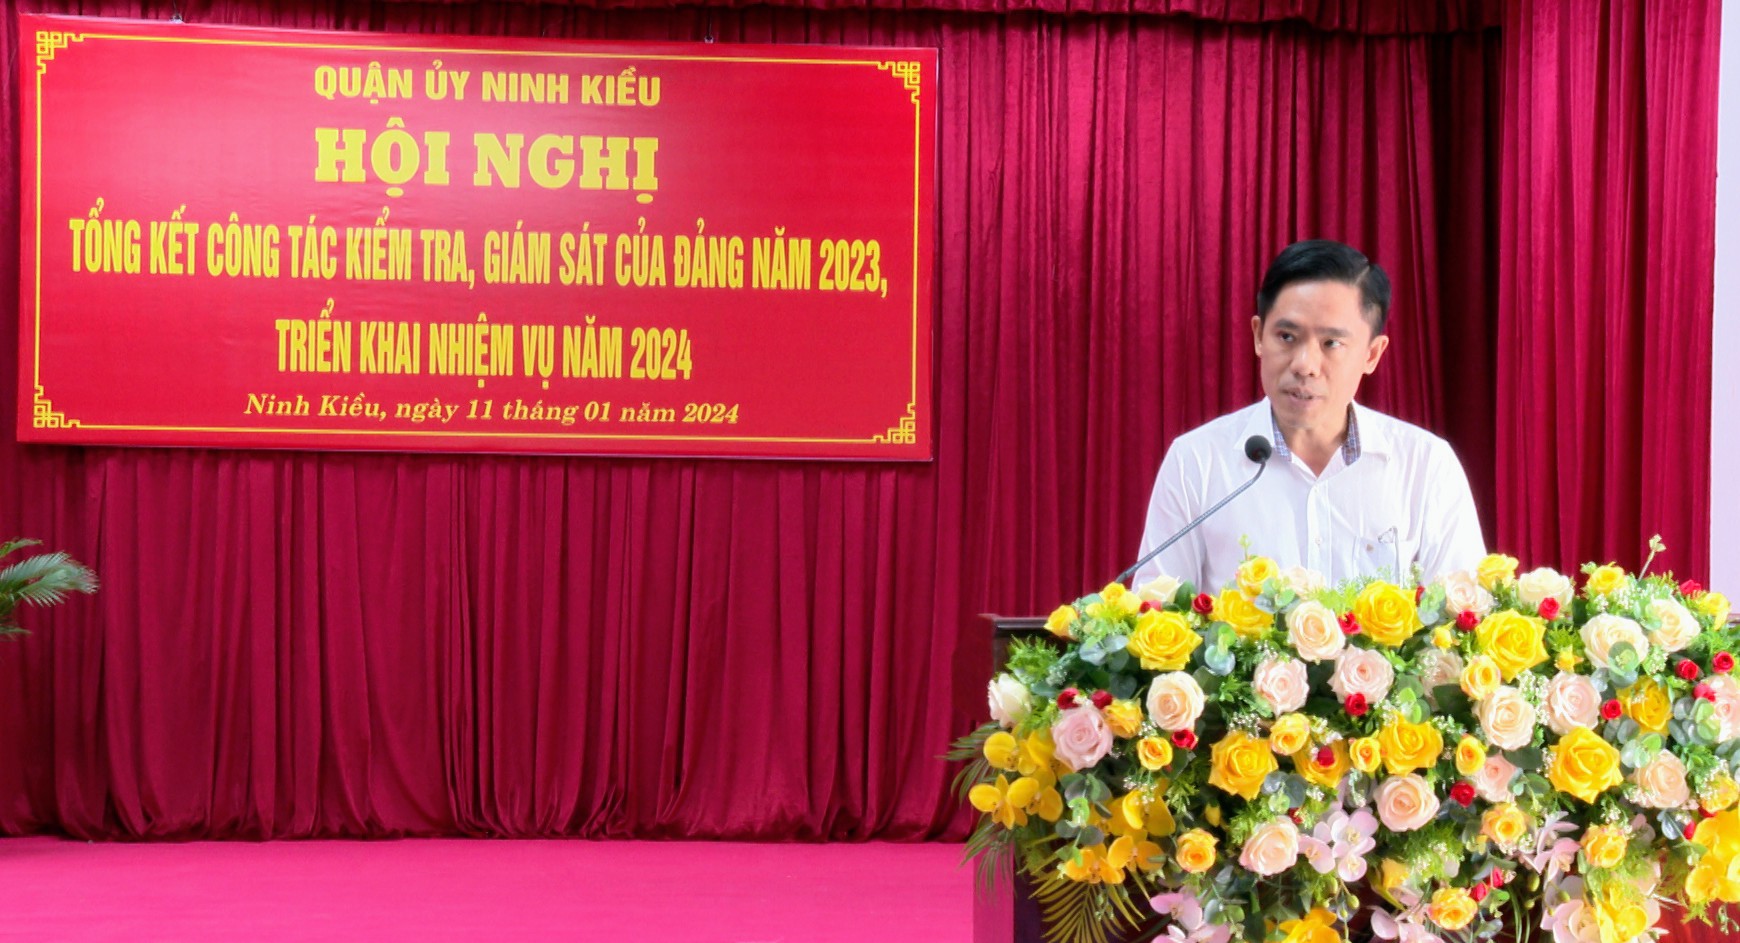 Đồng chí Nguyễn Văn Thành, Phó chủ nhiệm Ủy ban kiểm tra thành ủy Cần Thơ phát biểu tại hội nghị